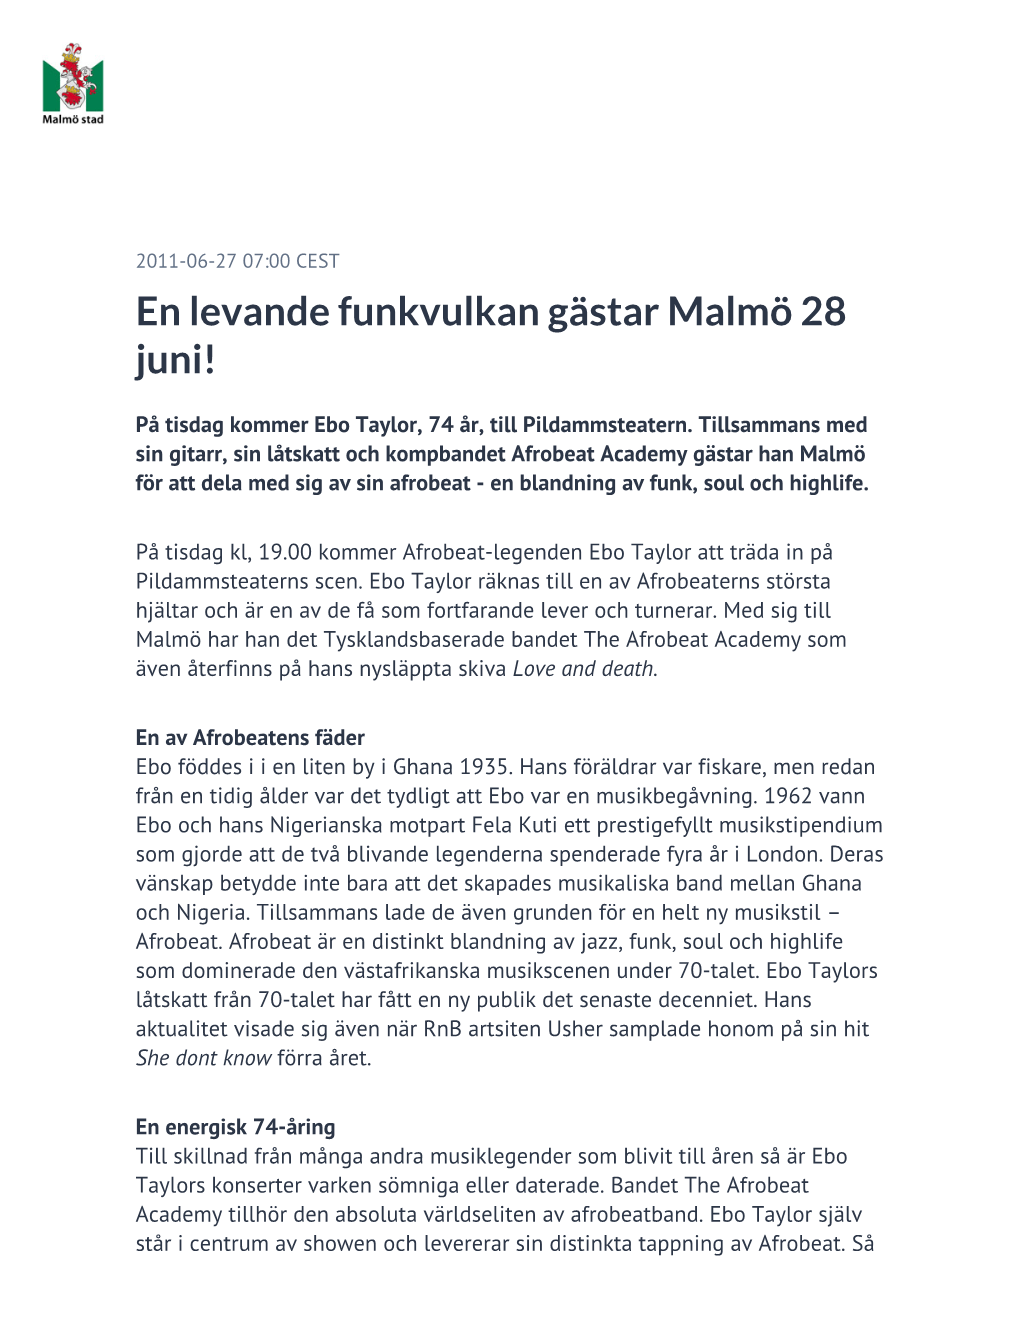 En Levande Funkvulkan Gästar Malmö 28 Juni!